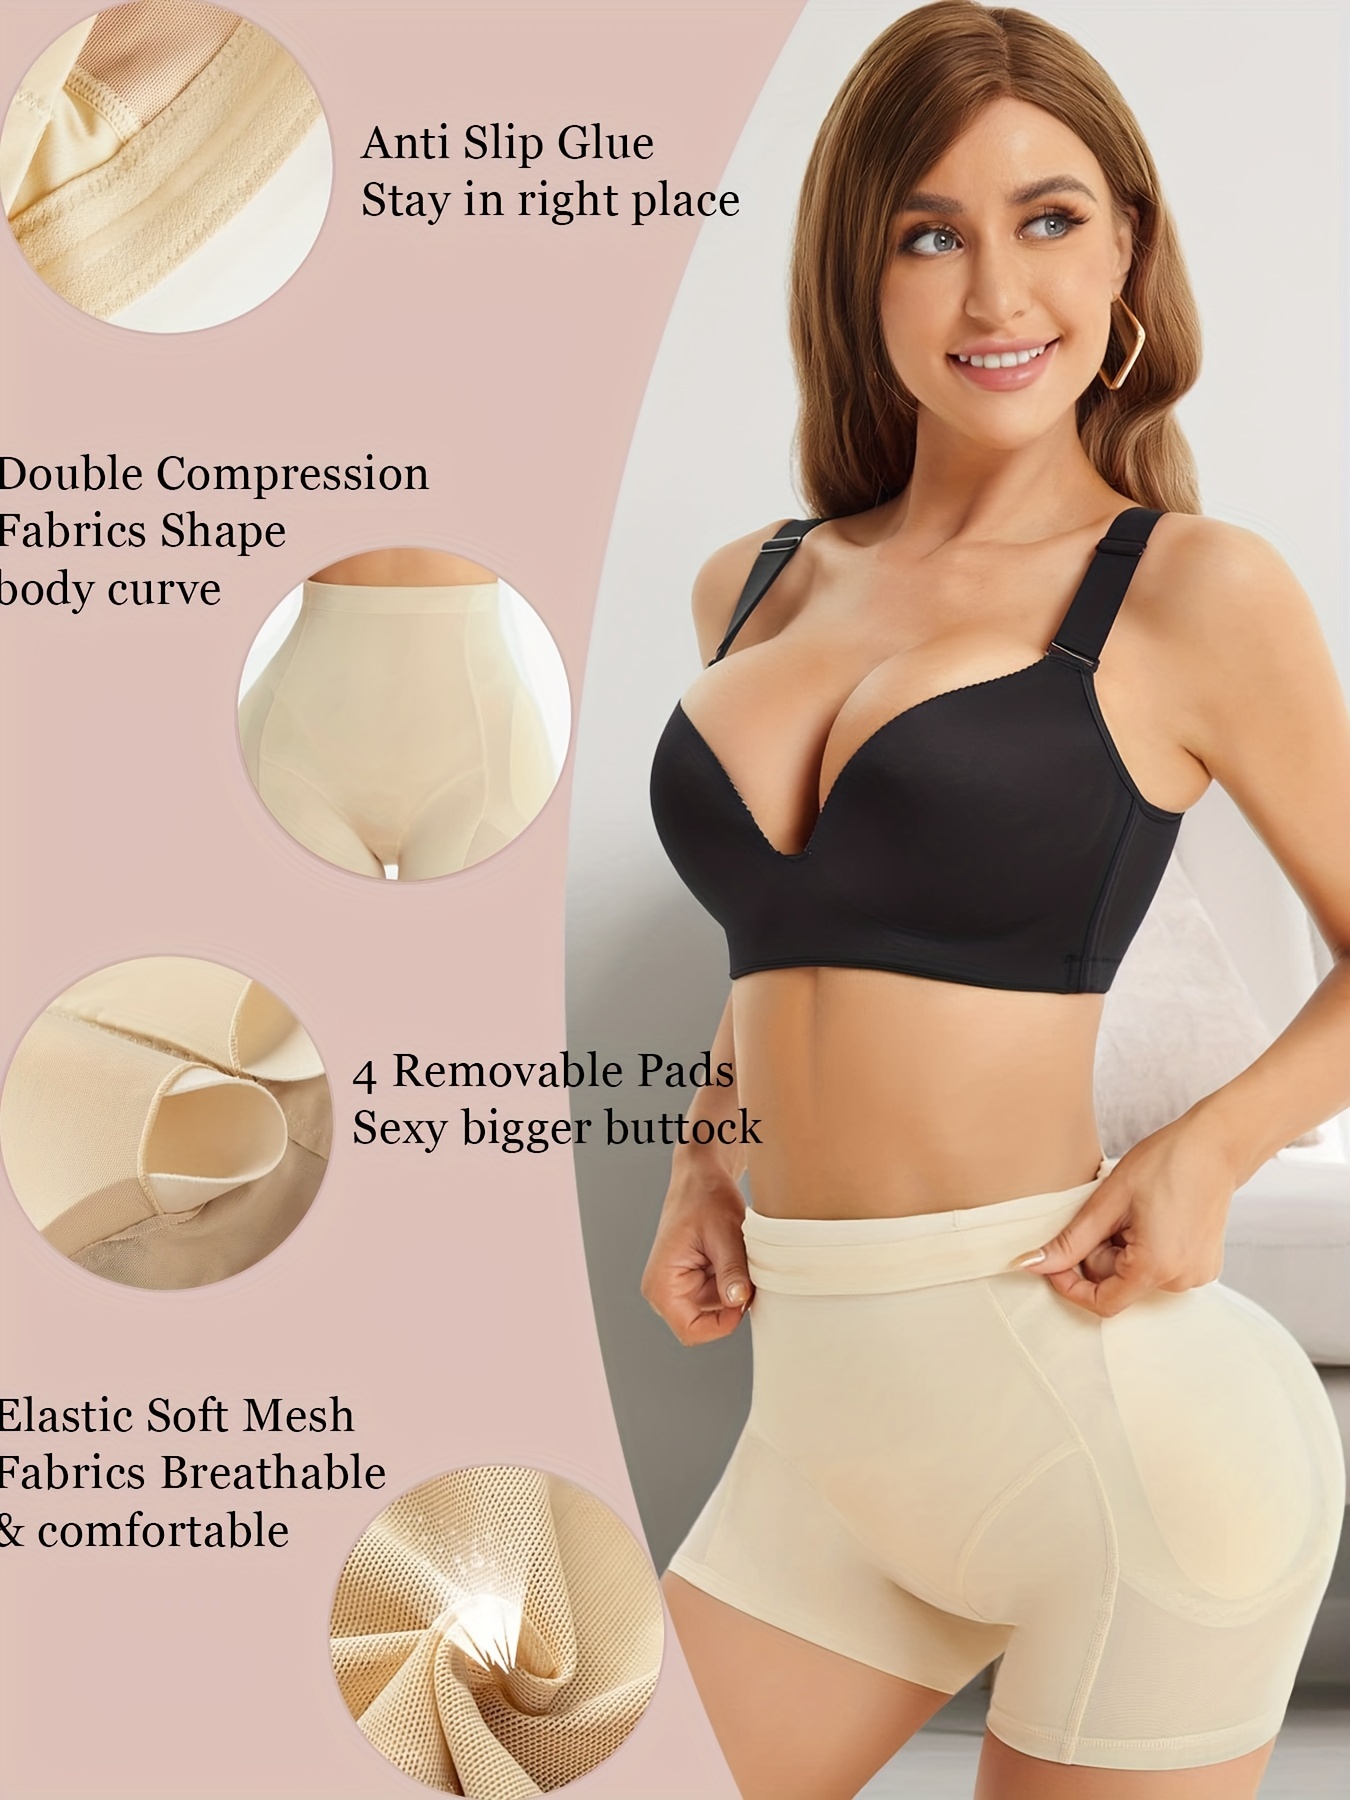 Buy Women Shapewear Butt Lifter Body Shaper Panties High Waist Hip Padded  Enhancer Lifter Panty Beige S at